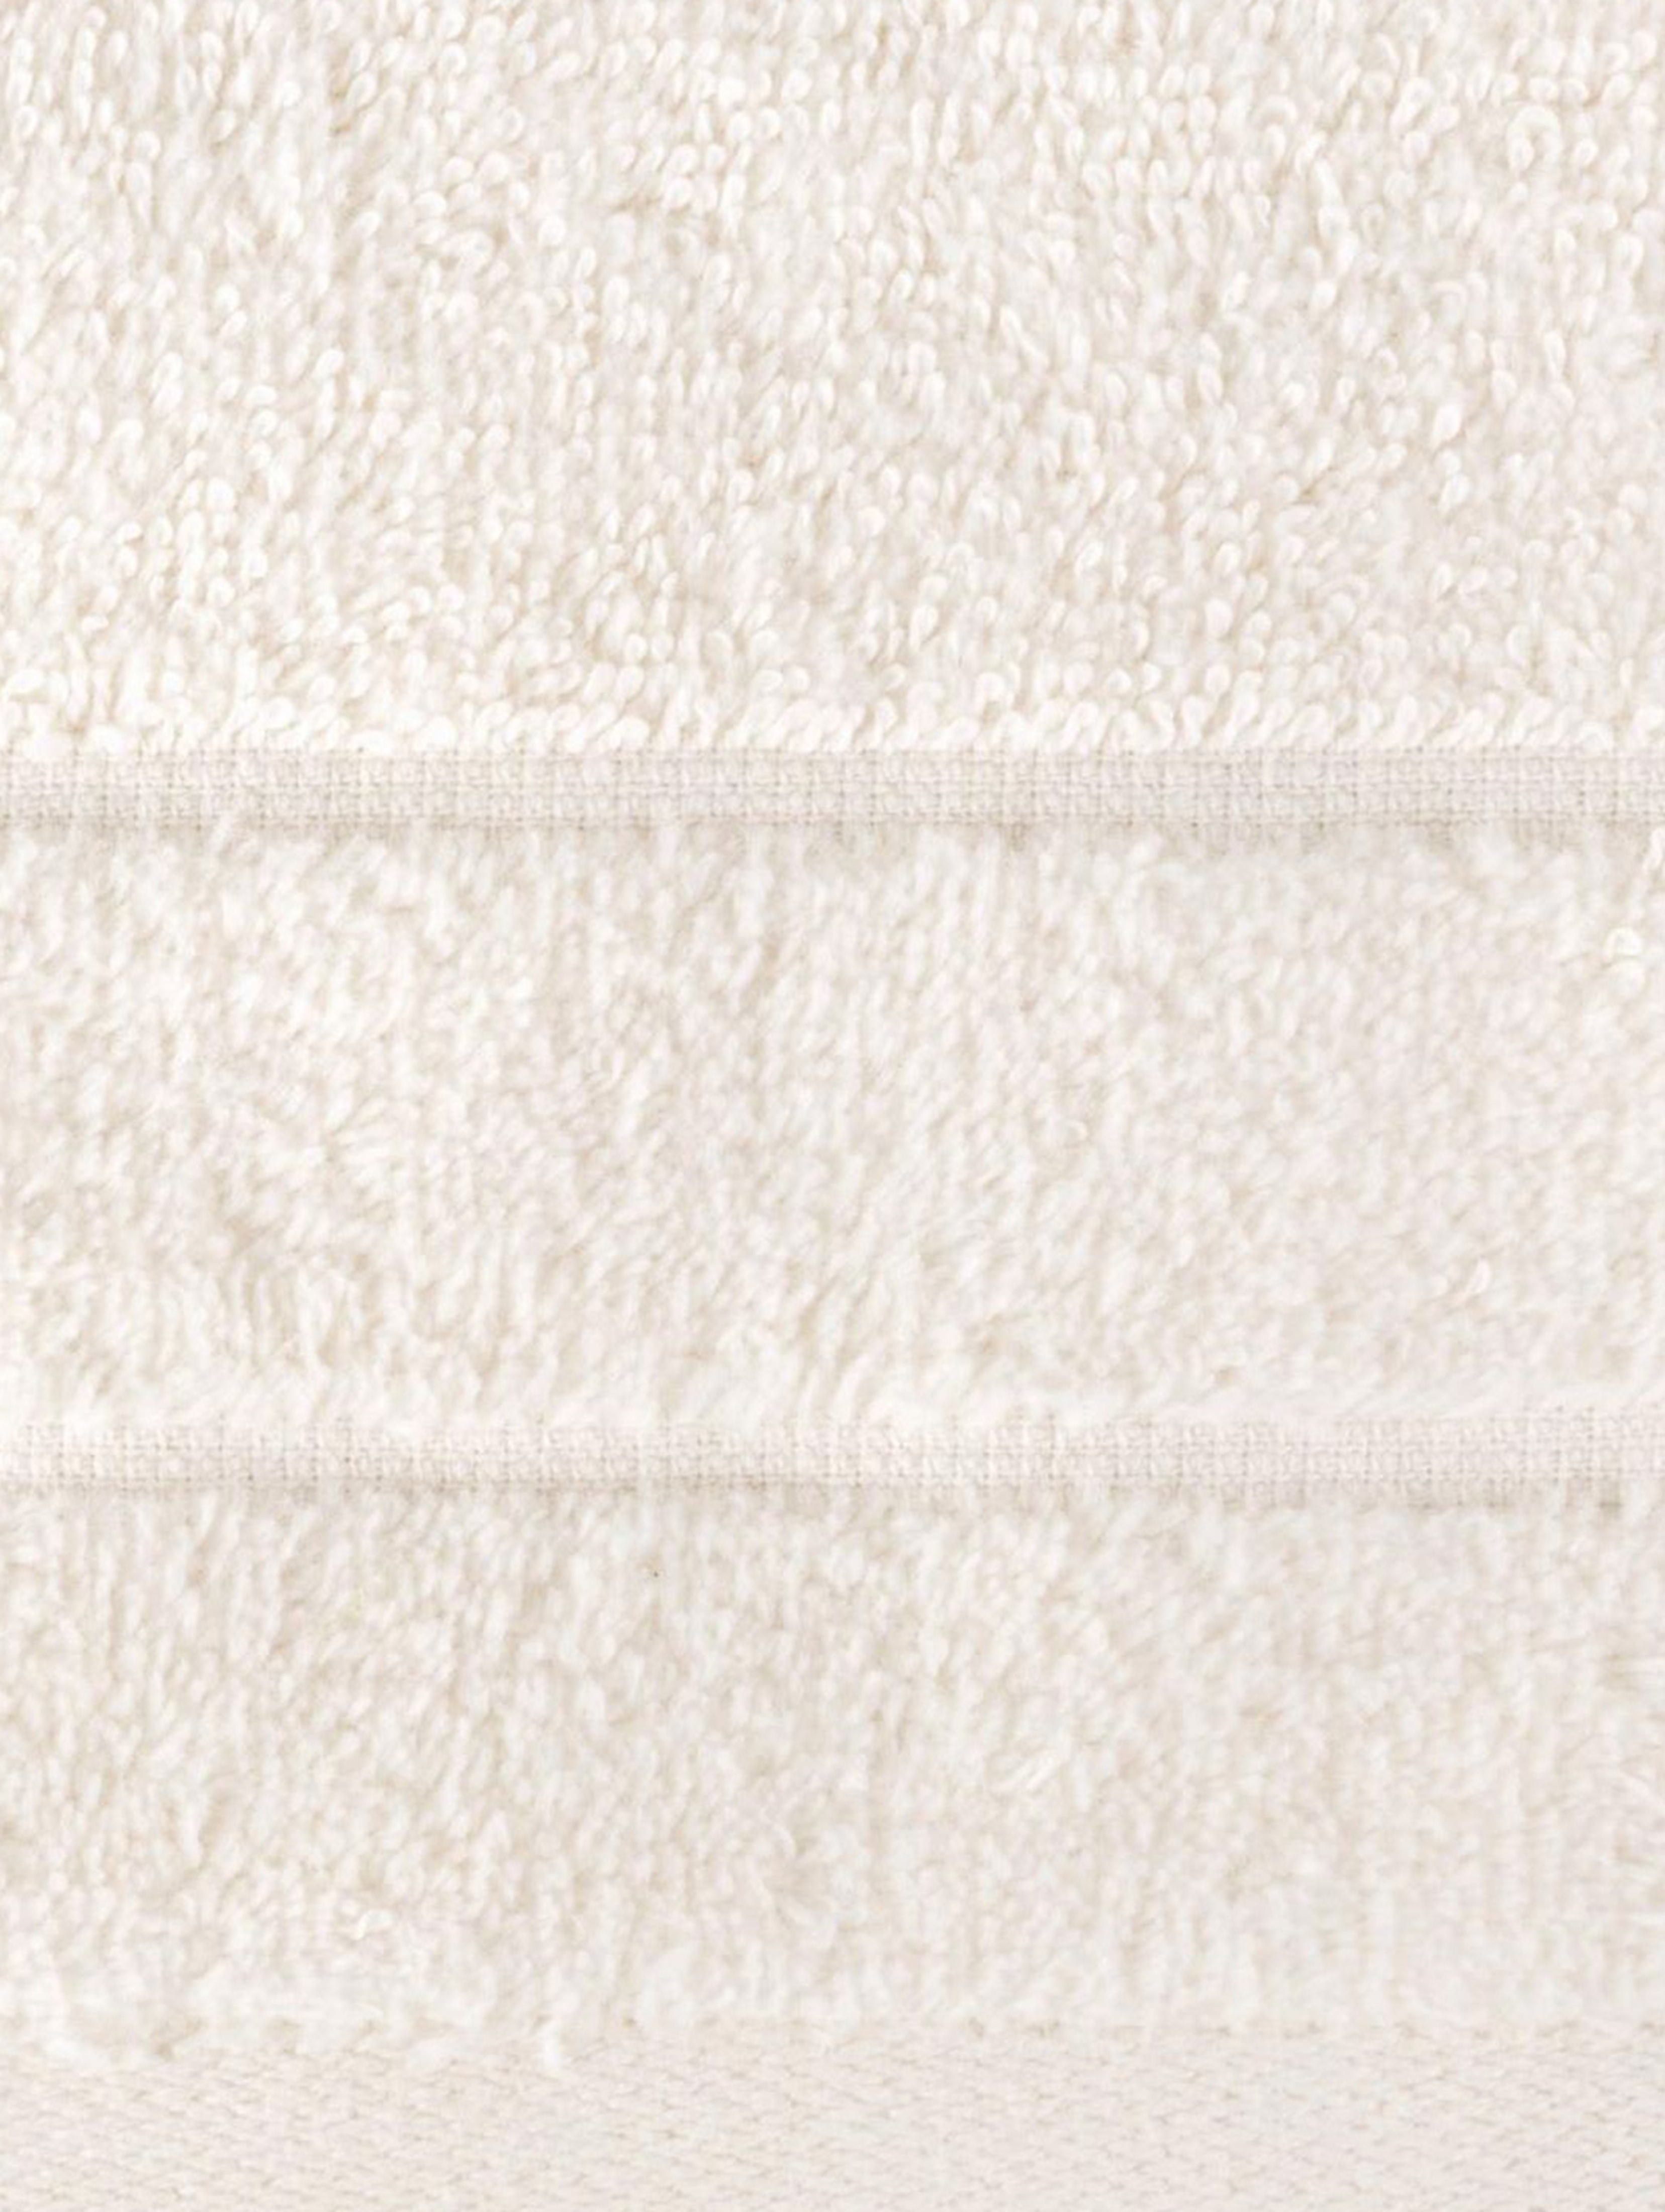 Ręcznik damla (07) 70x140 cm różowy